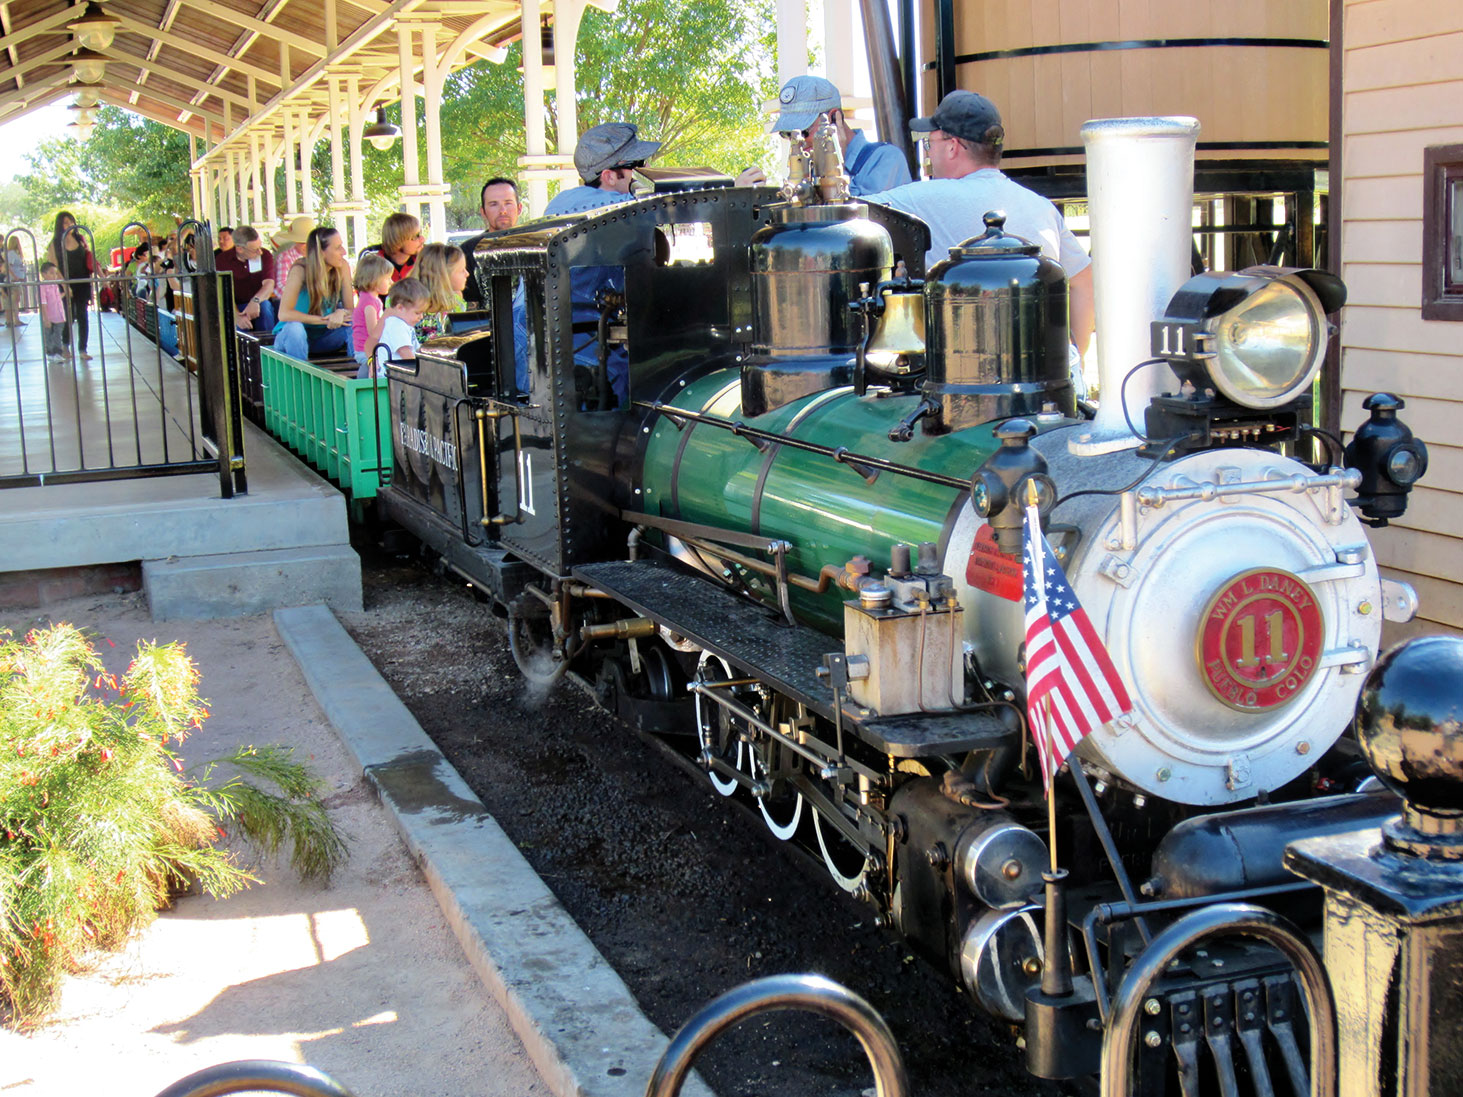 Enjoy a ride at the annual Rail Fair at the McCormick/Stillman Railroad Park!